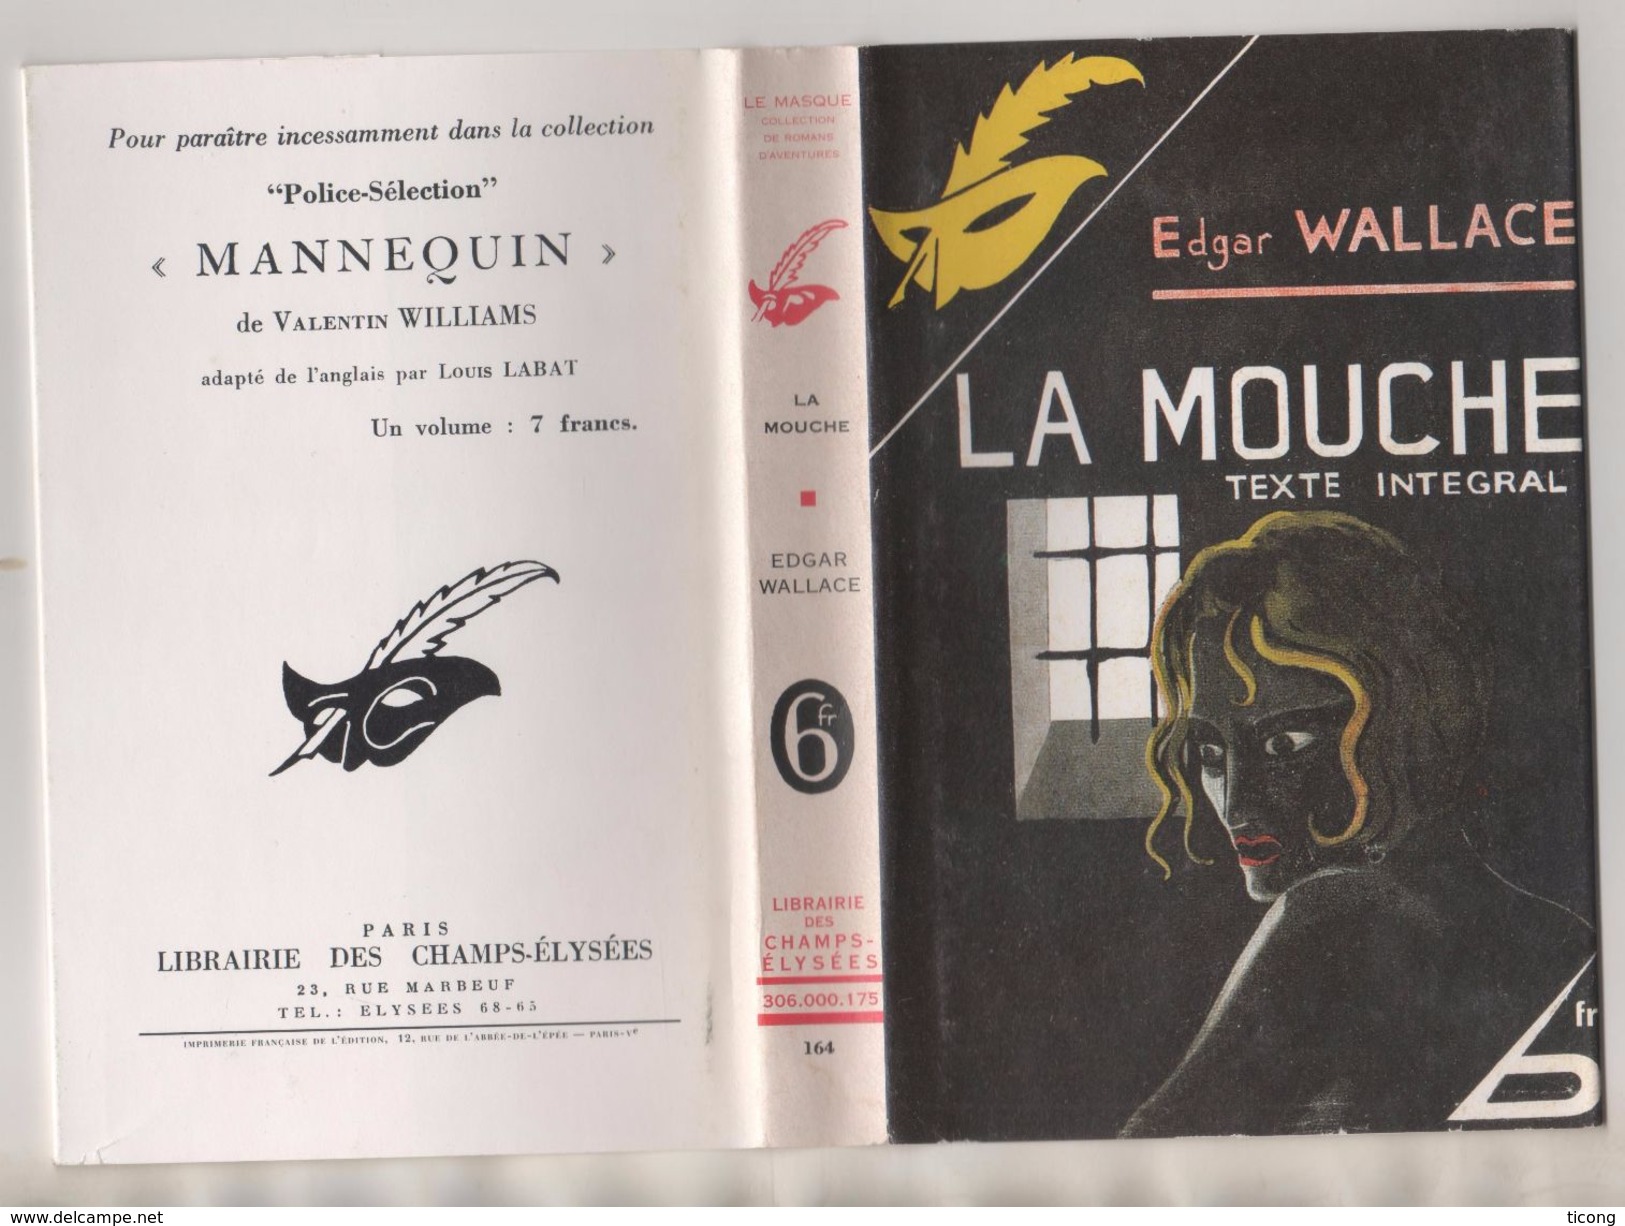 COLLECTOR LE MASQUE ROMANS D AVENTURES 1927 1997 - 3 LIVRES SOUS COLLECTOR CARTONNE - JAQUETTES, CARTONNES - A VOIR - Le Masque